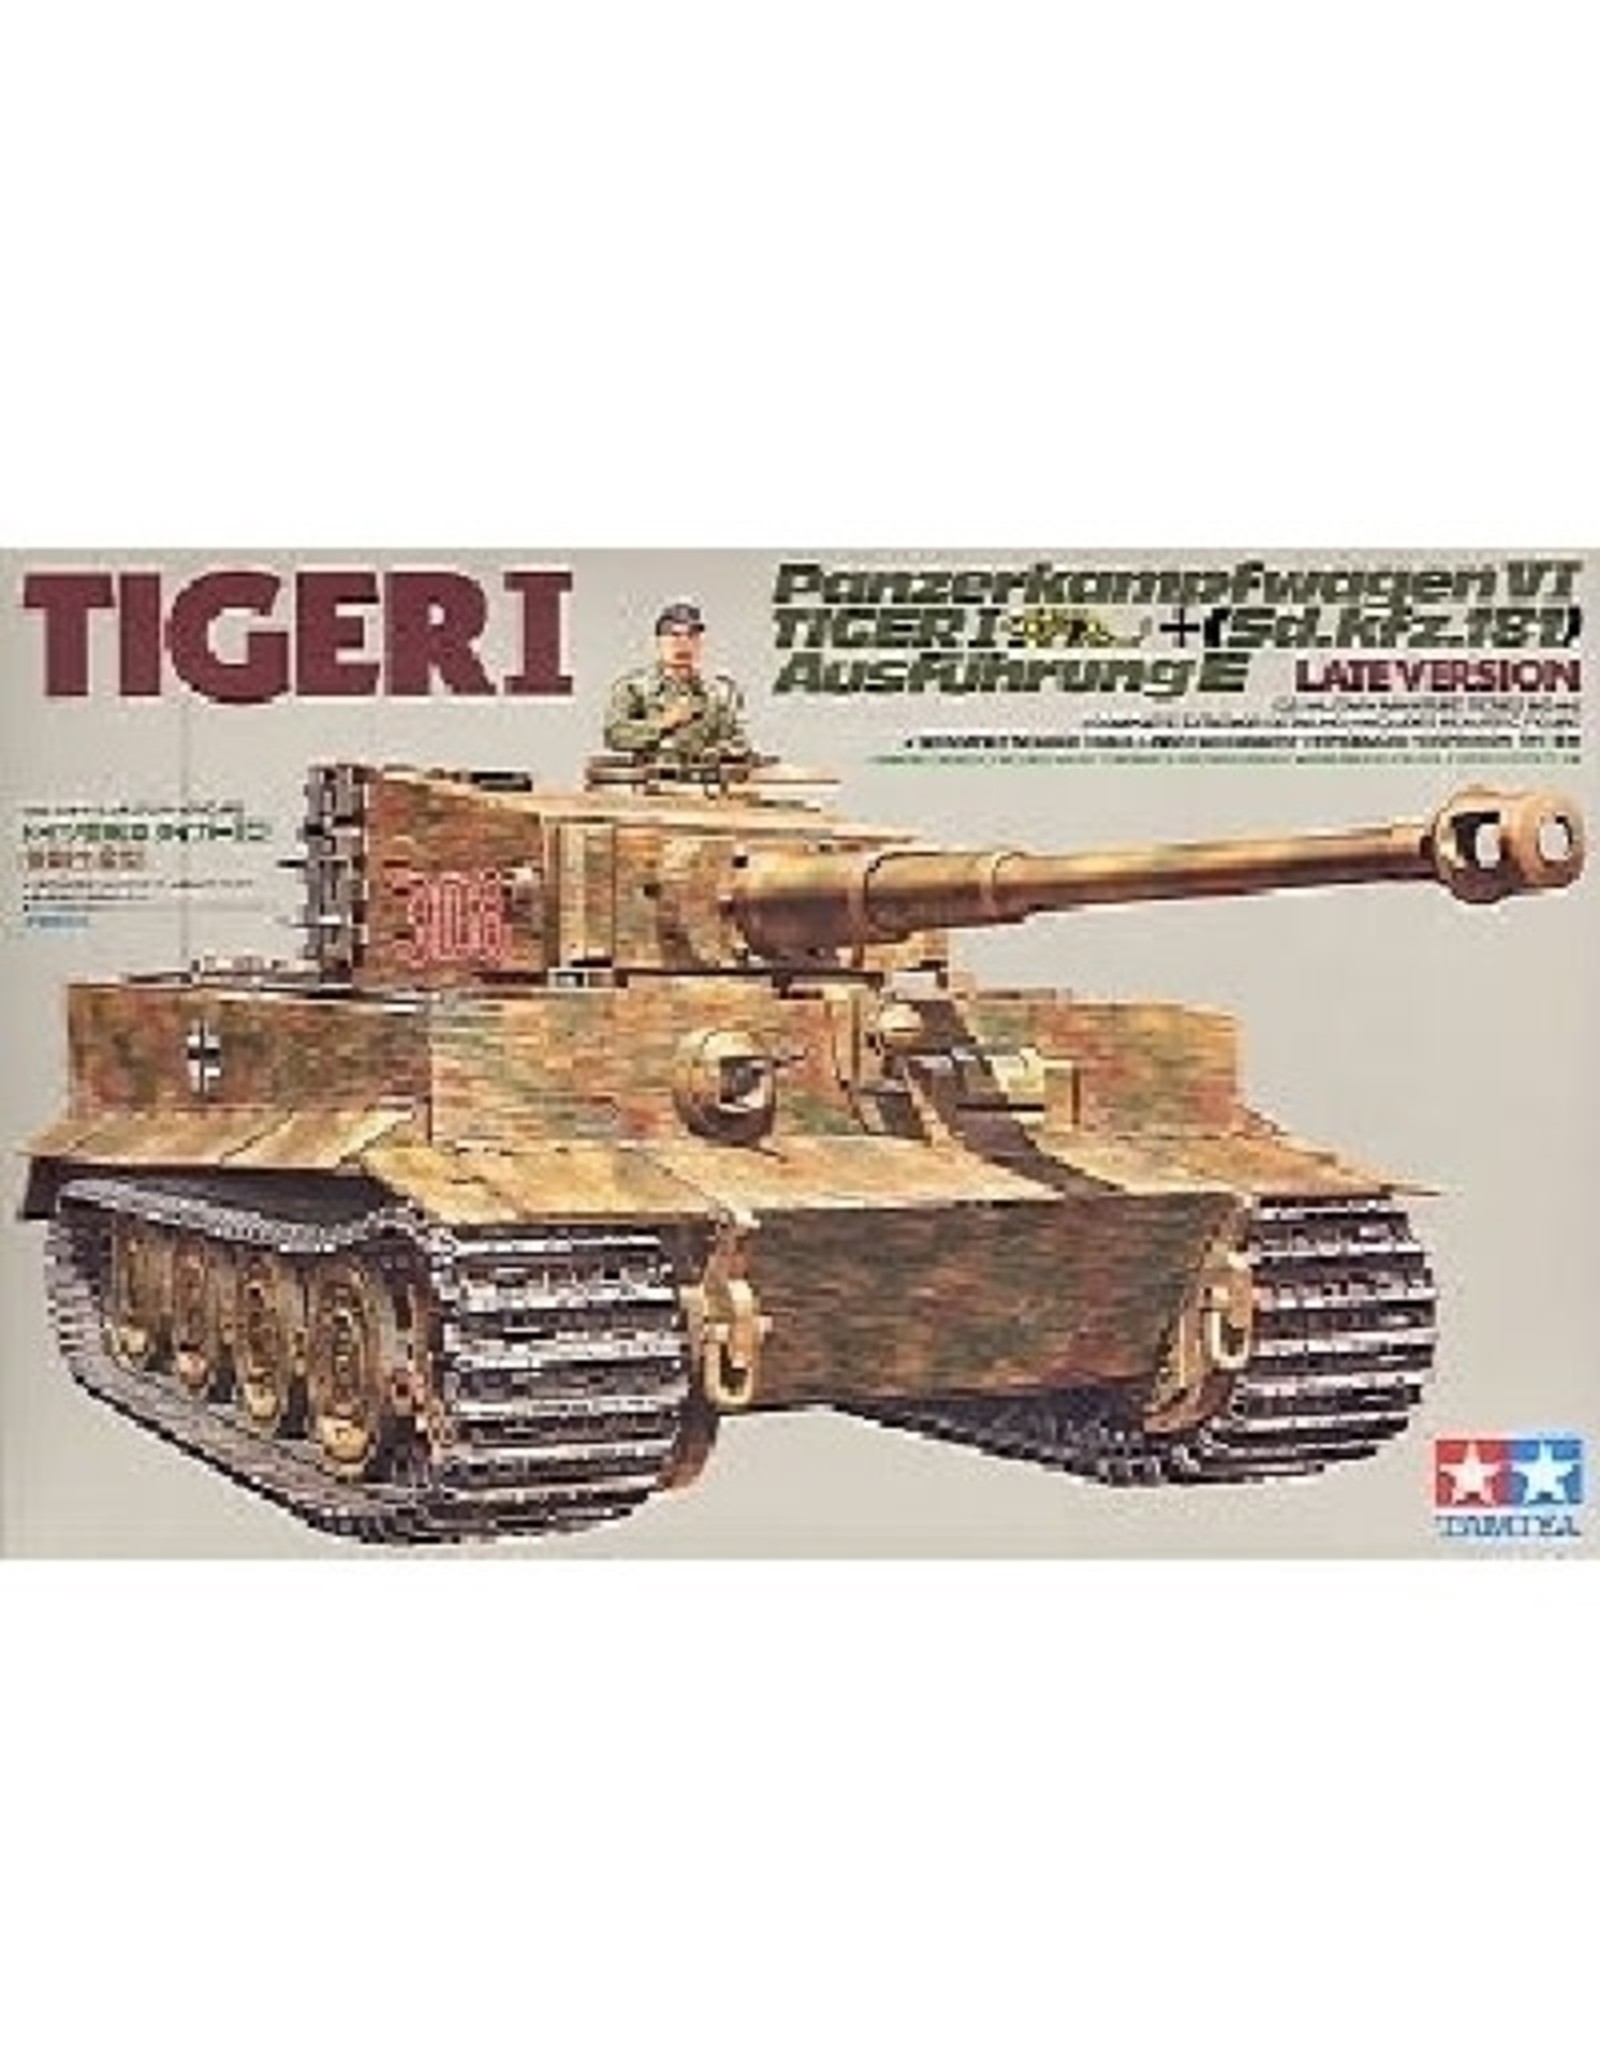 Panzerkampfwagen VI Tiger I (German Tiger I "Late Version")